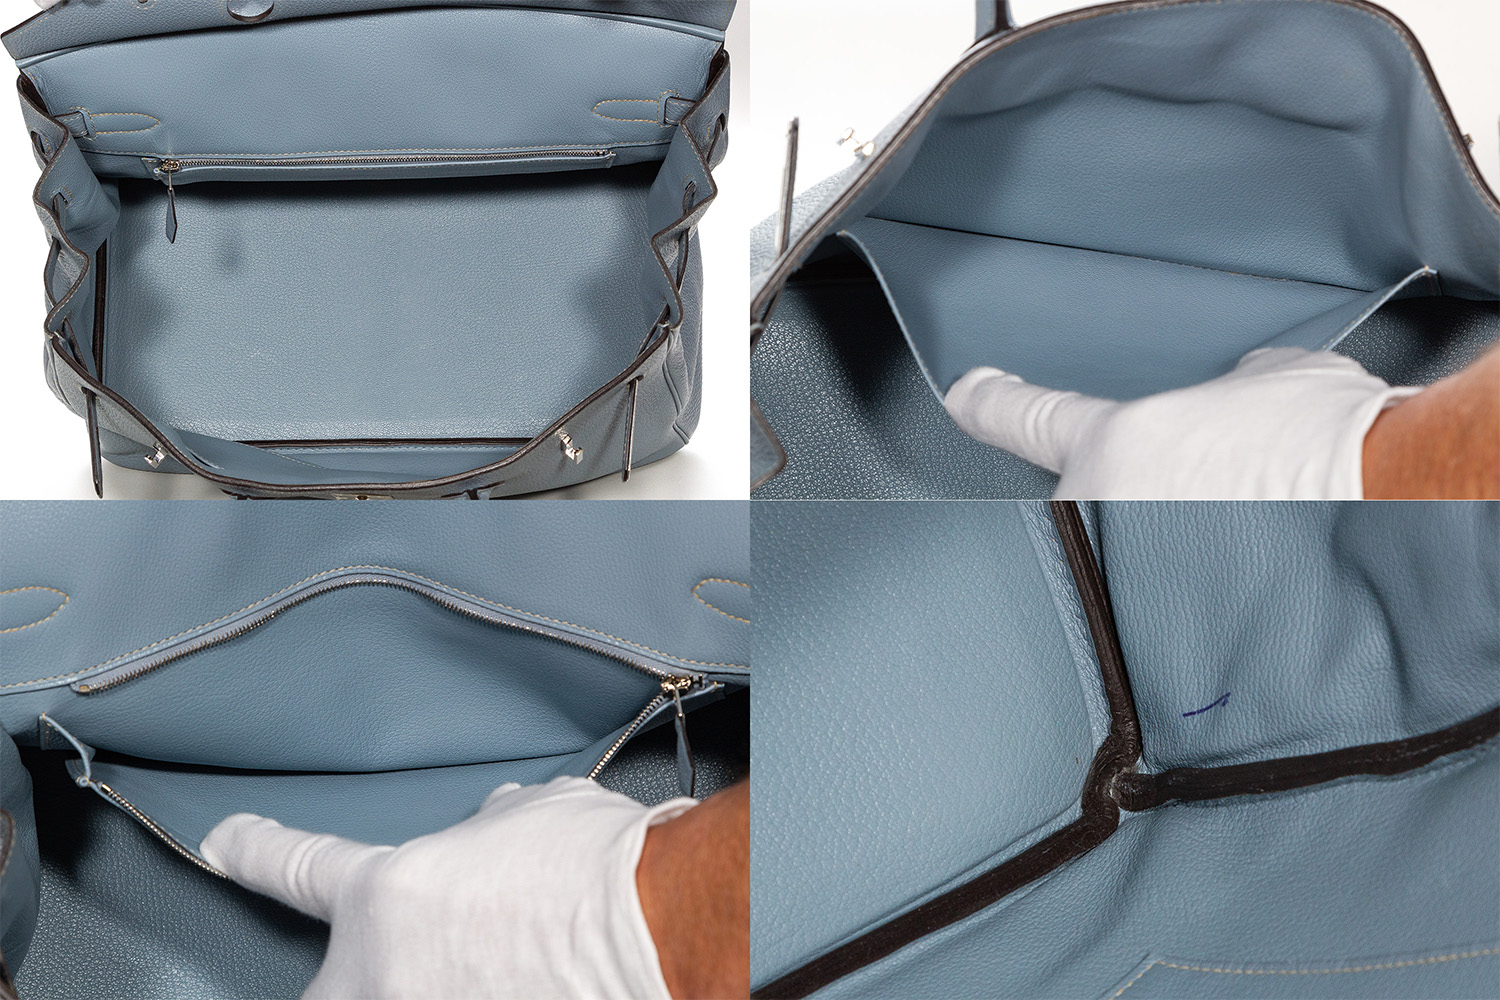 Lovely New Color Hermes Birkin Bag 35cm Blue Lin Bleu Lin Epsom